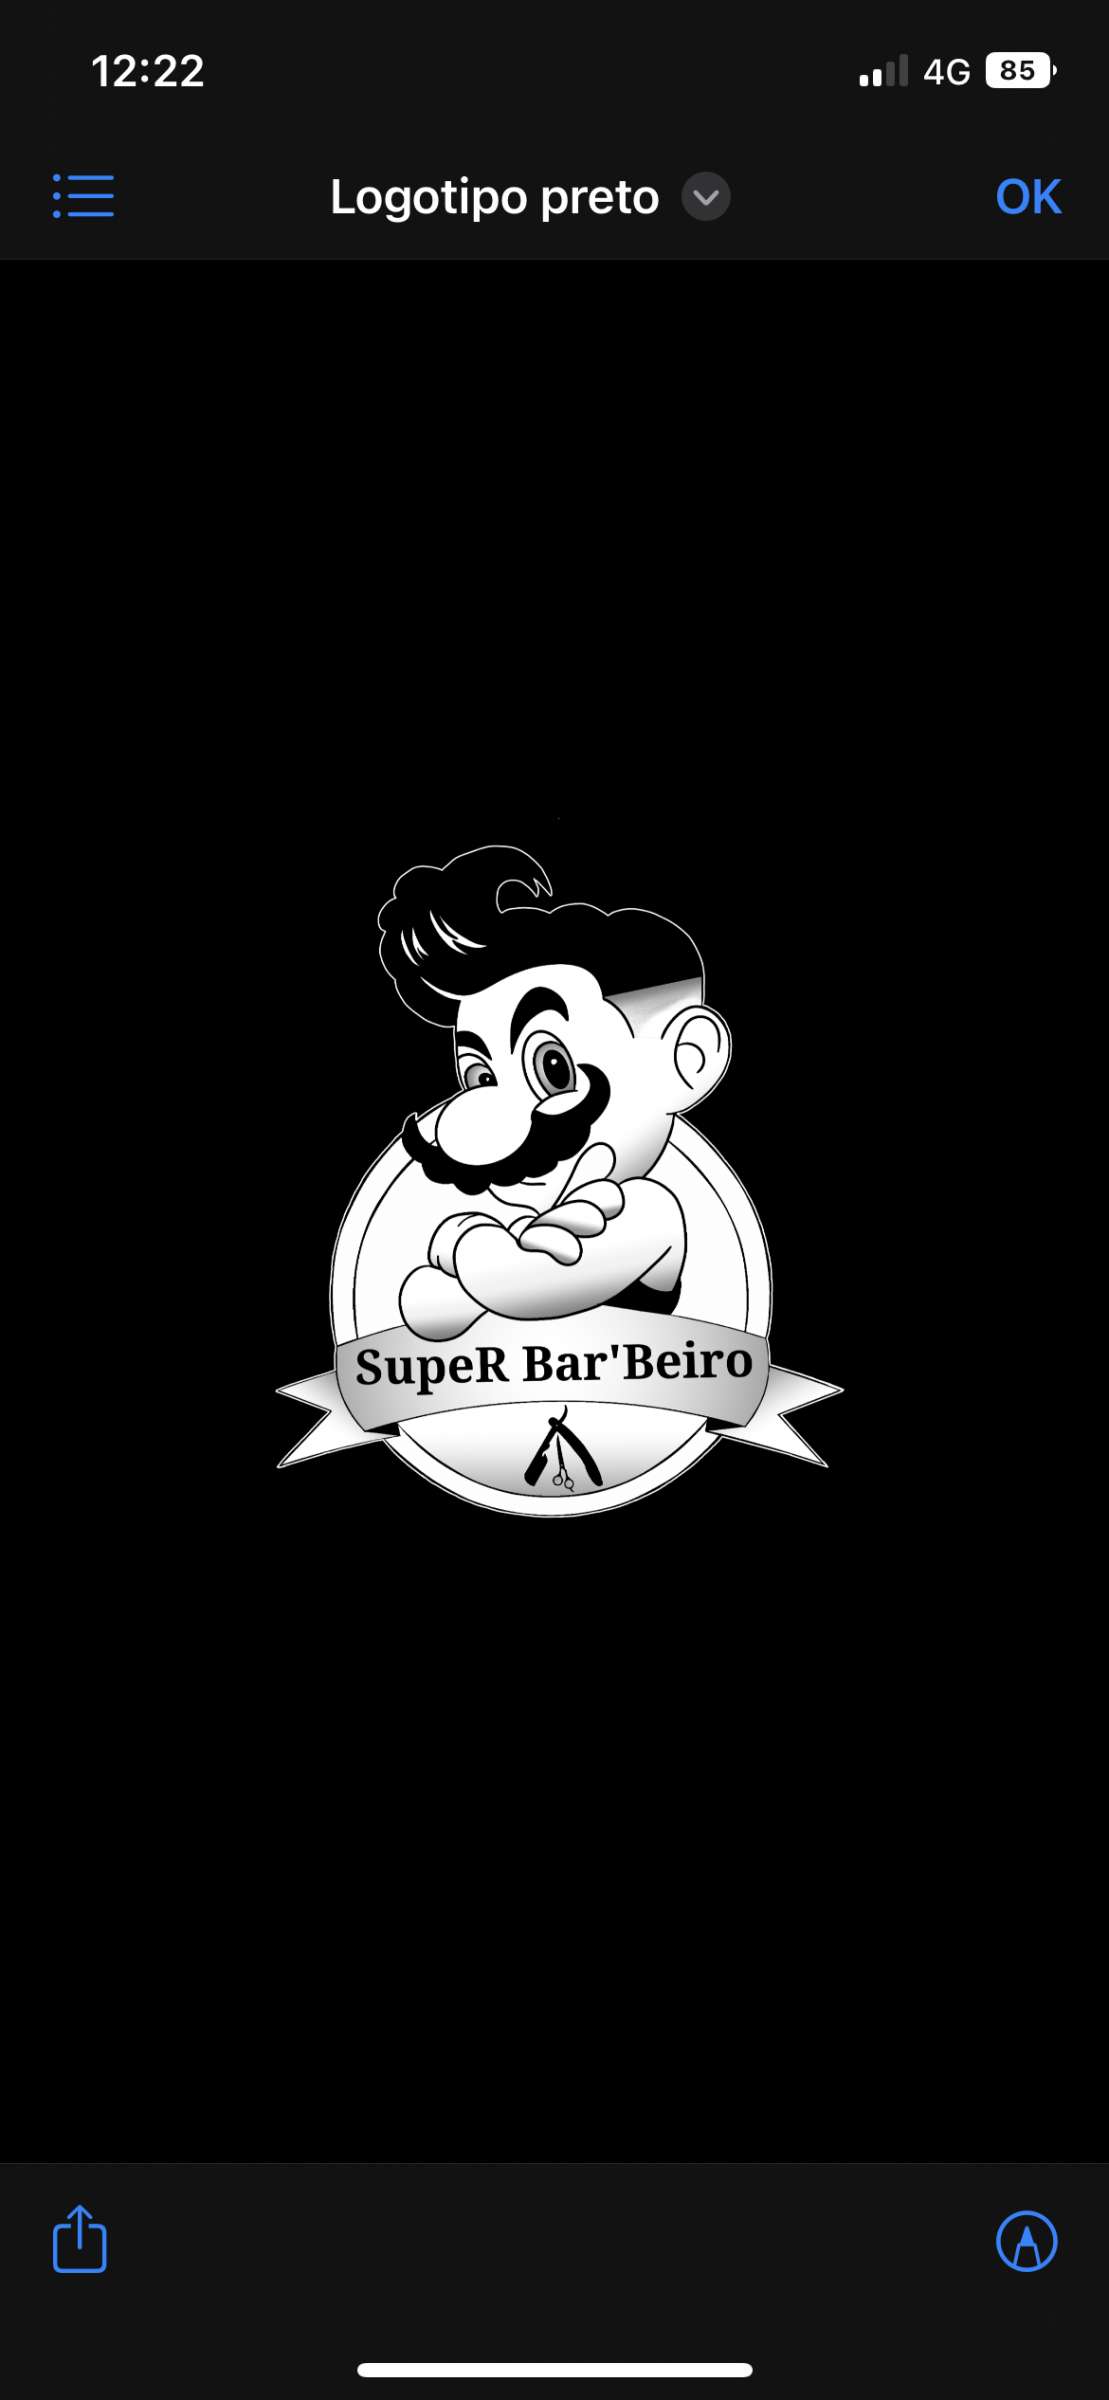 SupeR Bar’Beiro - Vagos - Barbeiros